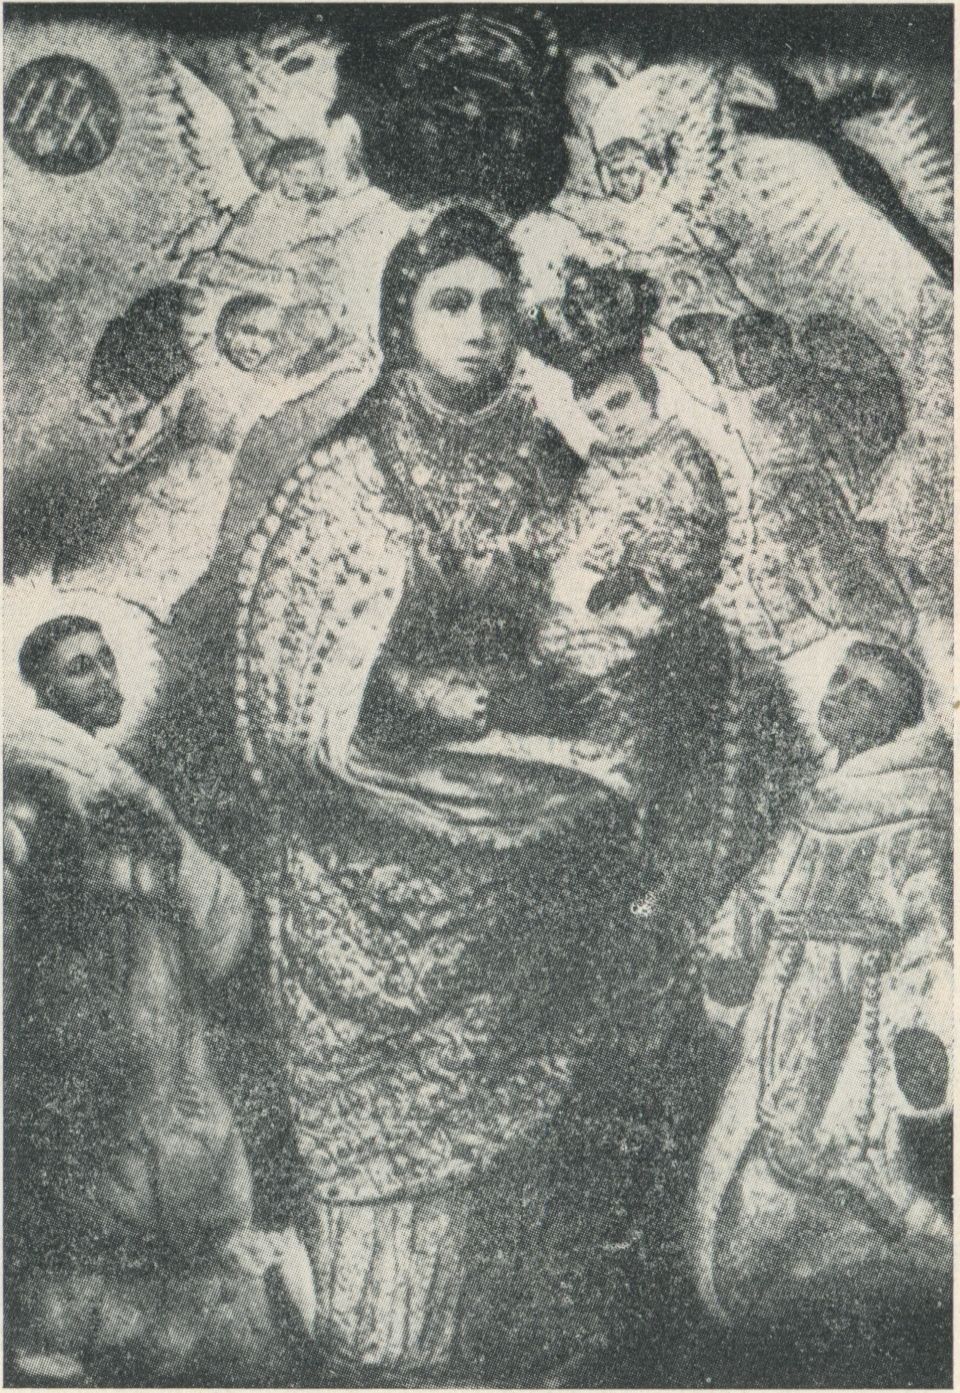  vainikuotasis Marijos paveikslas